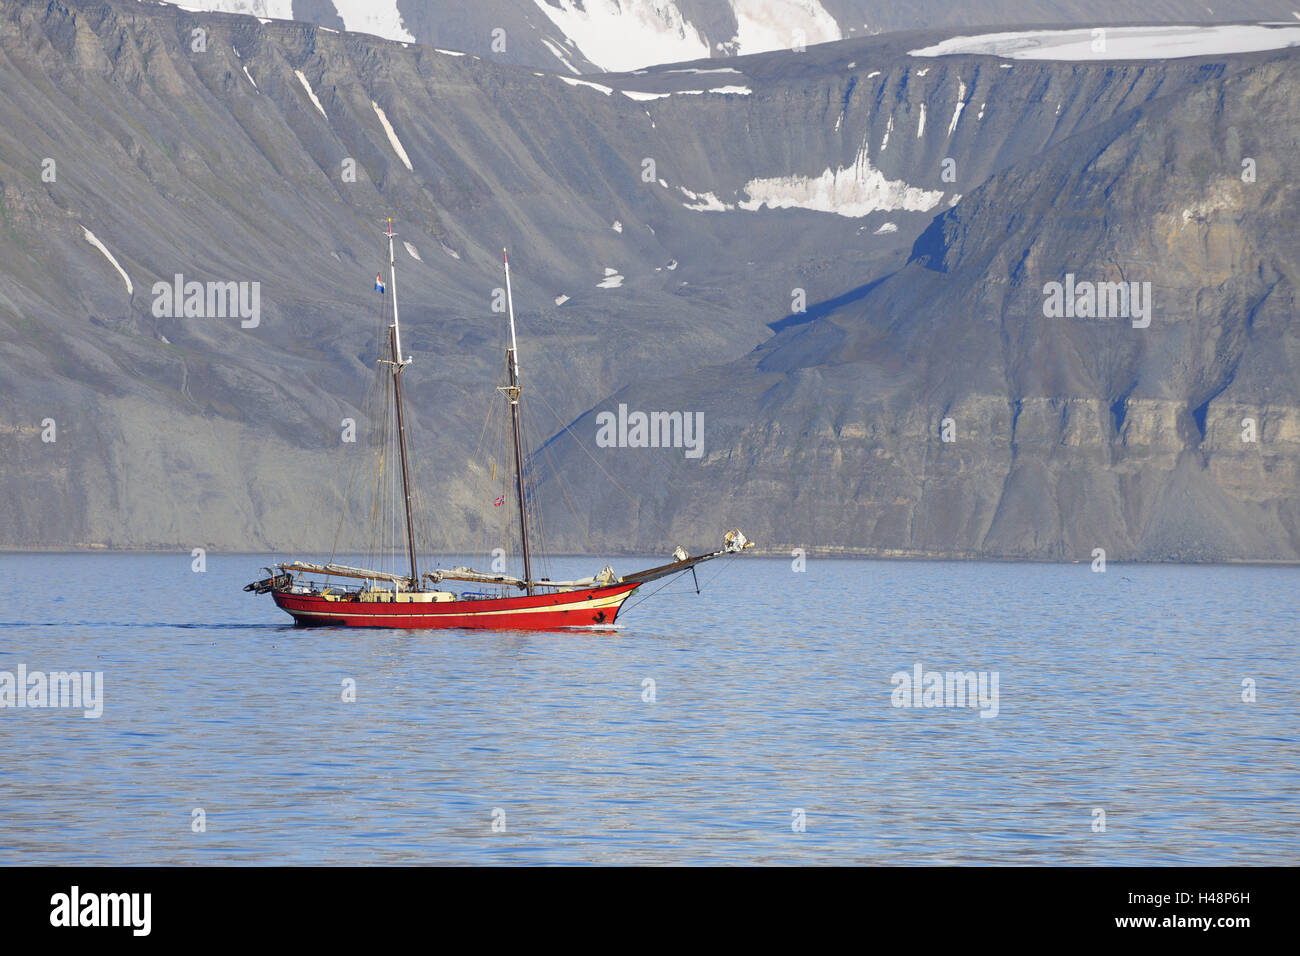 Sailing ship, 2 mast schooner, Noorderlicht, to Advent fjords, Svalbard, Spitsbergen, Norway, Stock Photo